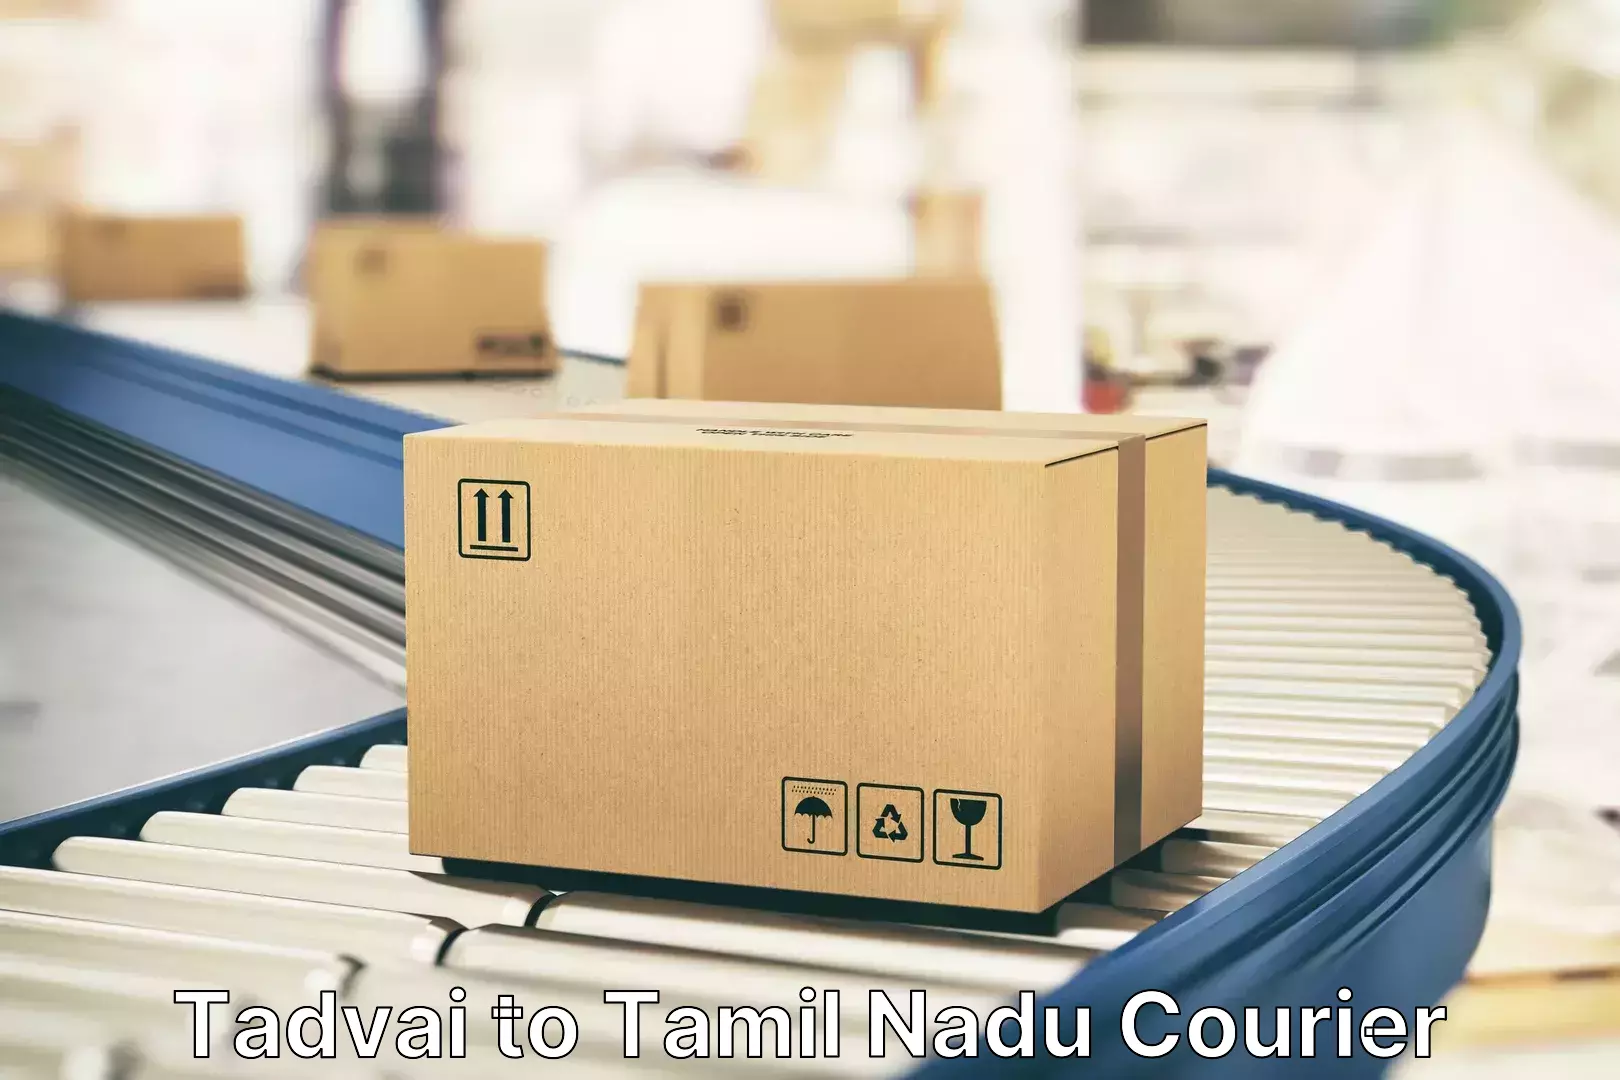 Luggage transport operations Tadvai to Viralimalai